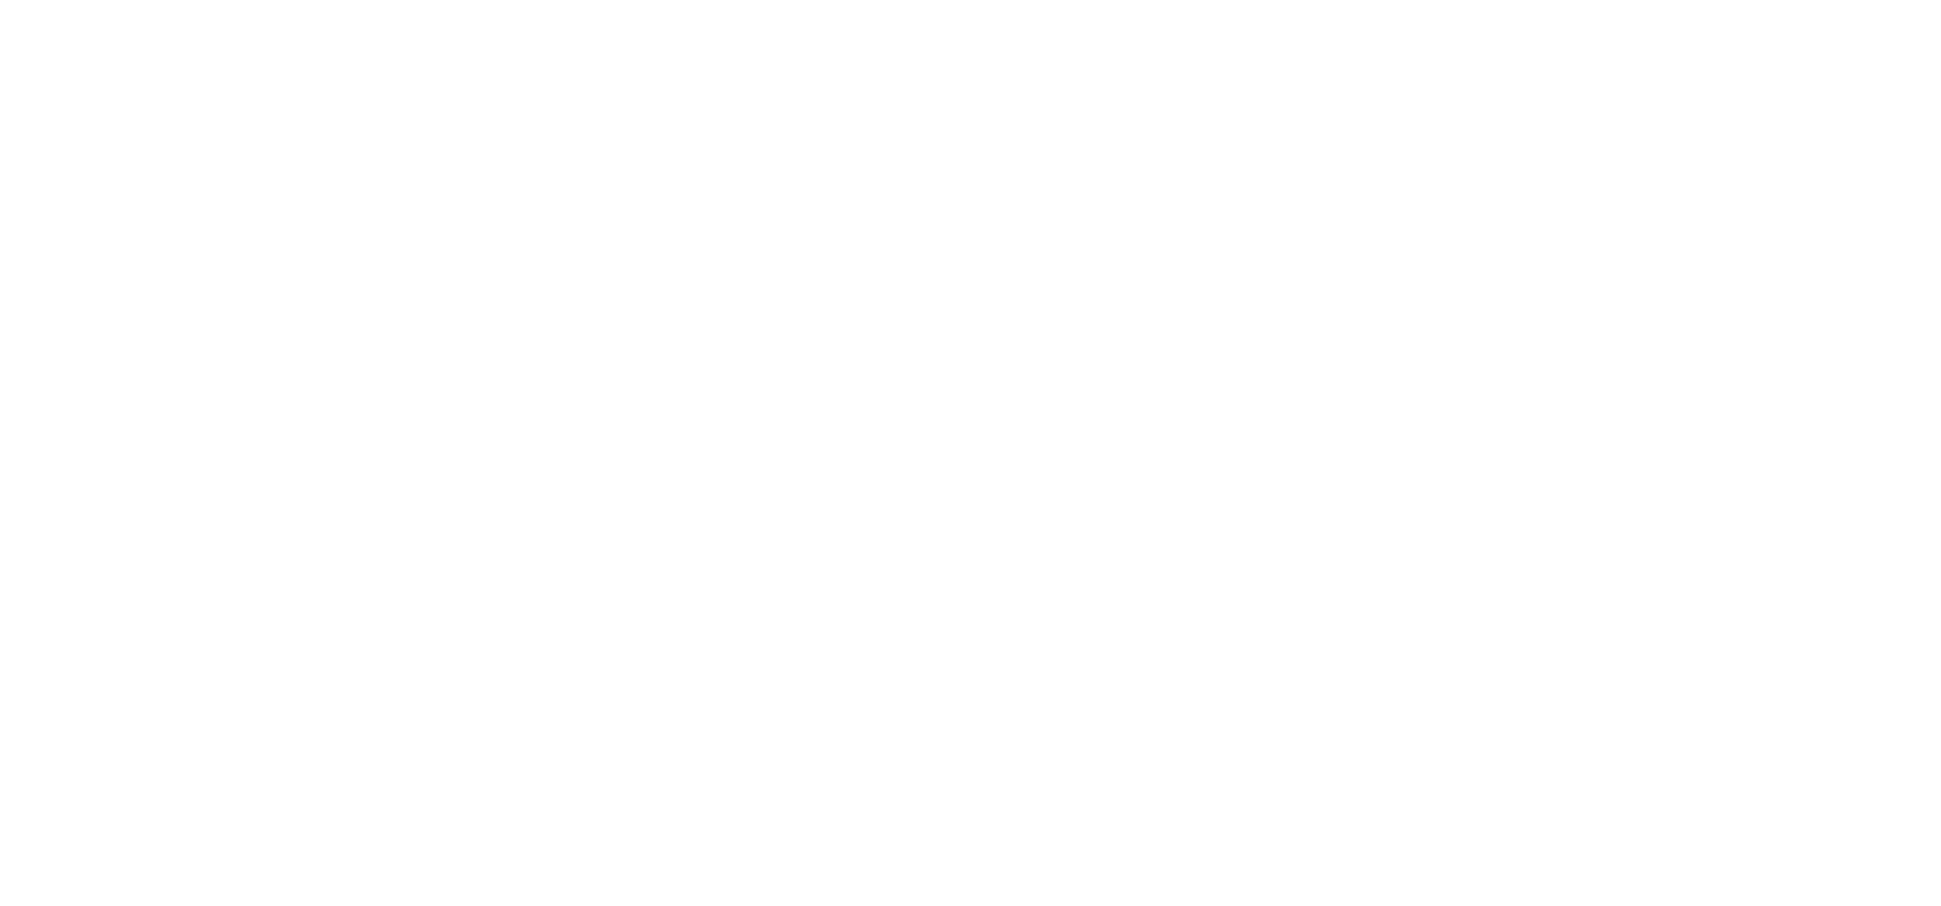 Matthieu Petitjean, Ostéopathe D.F.O.